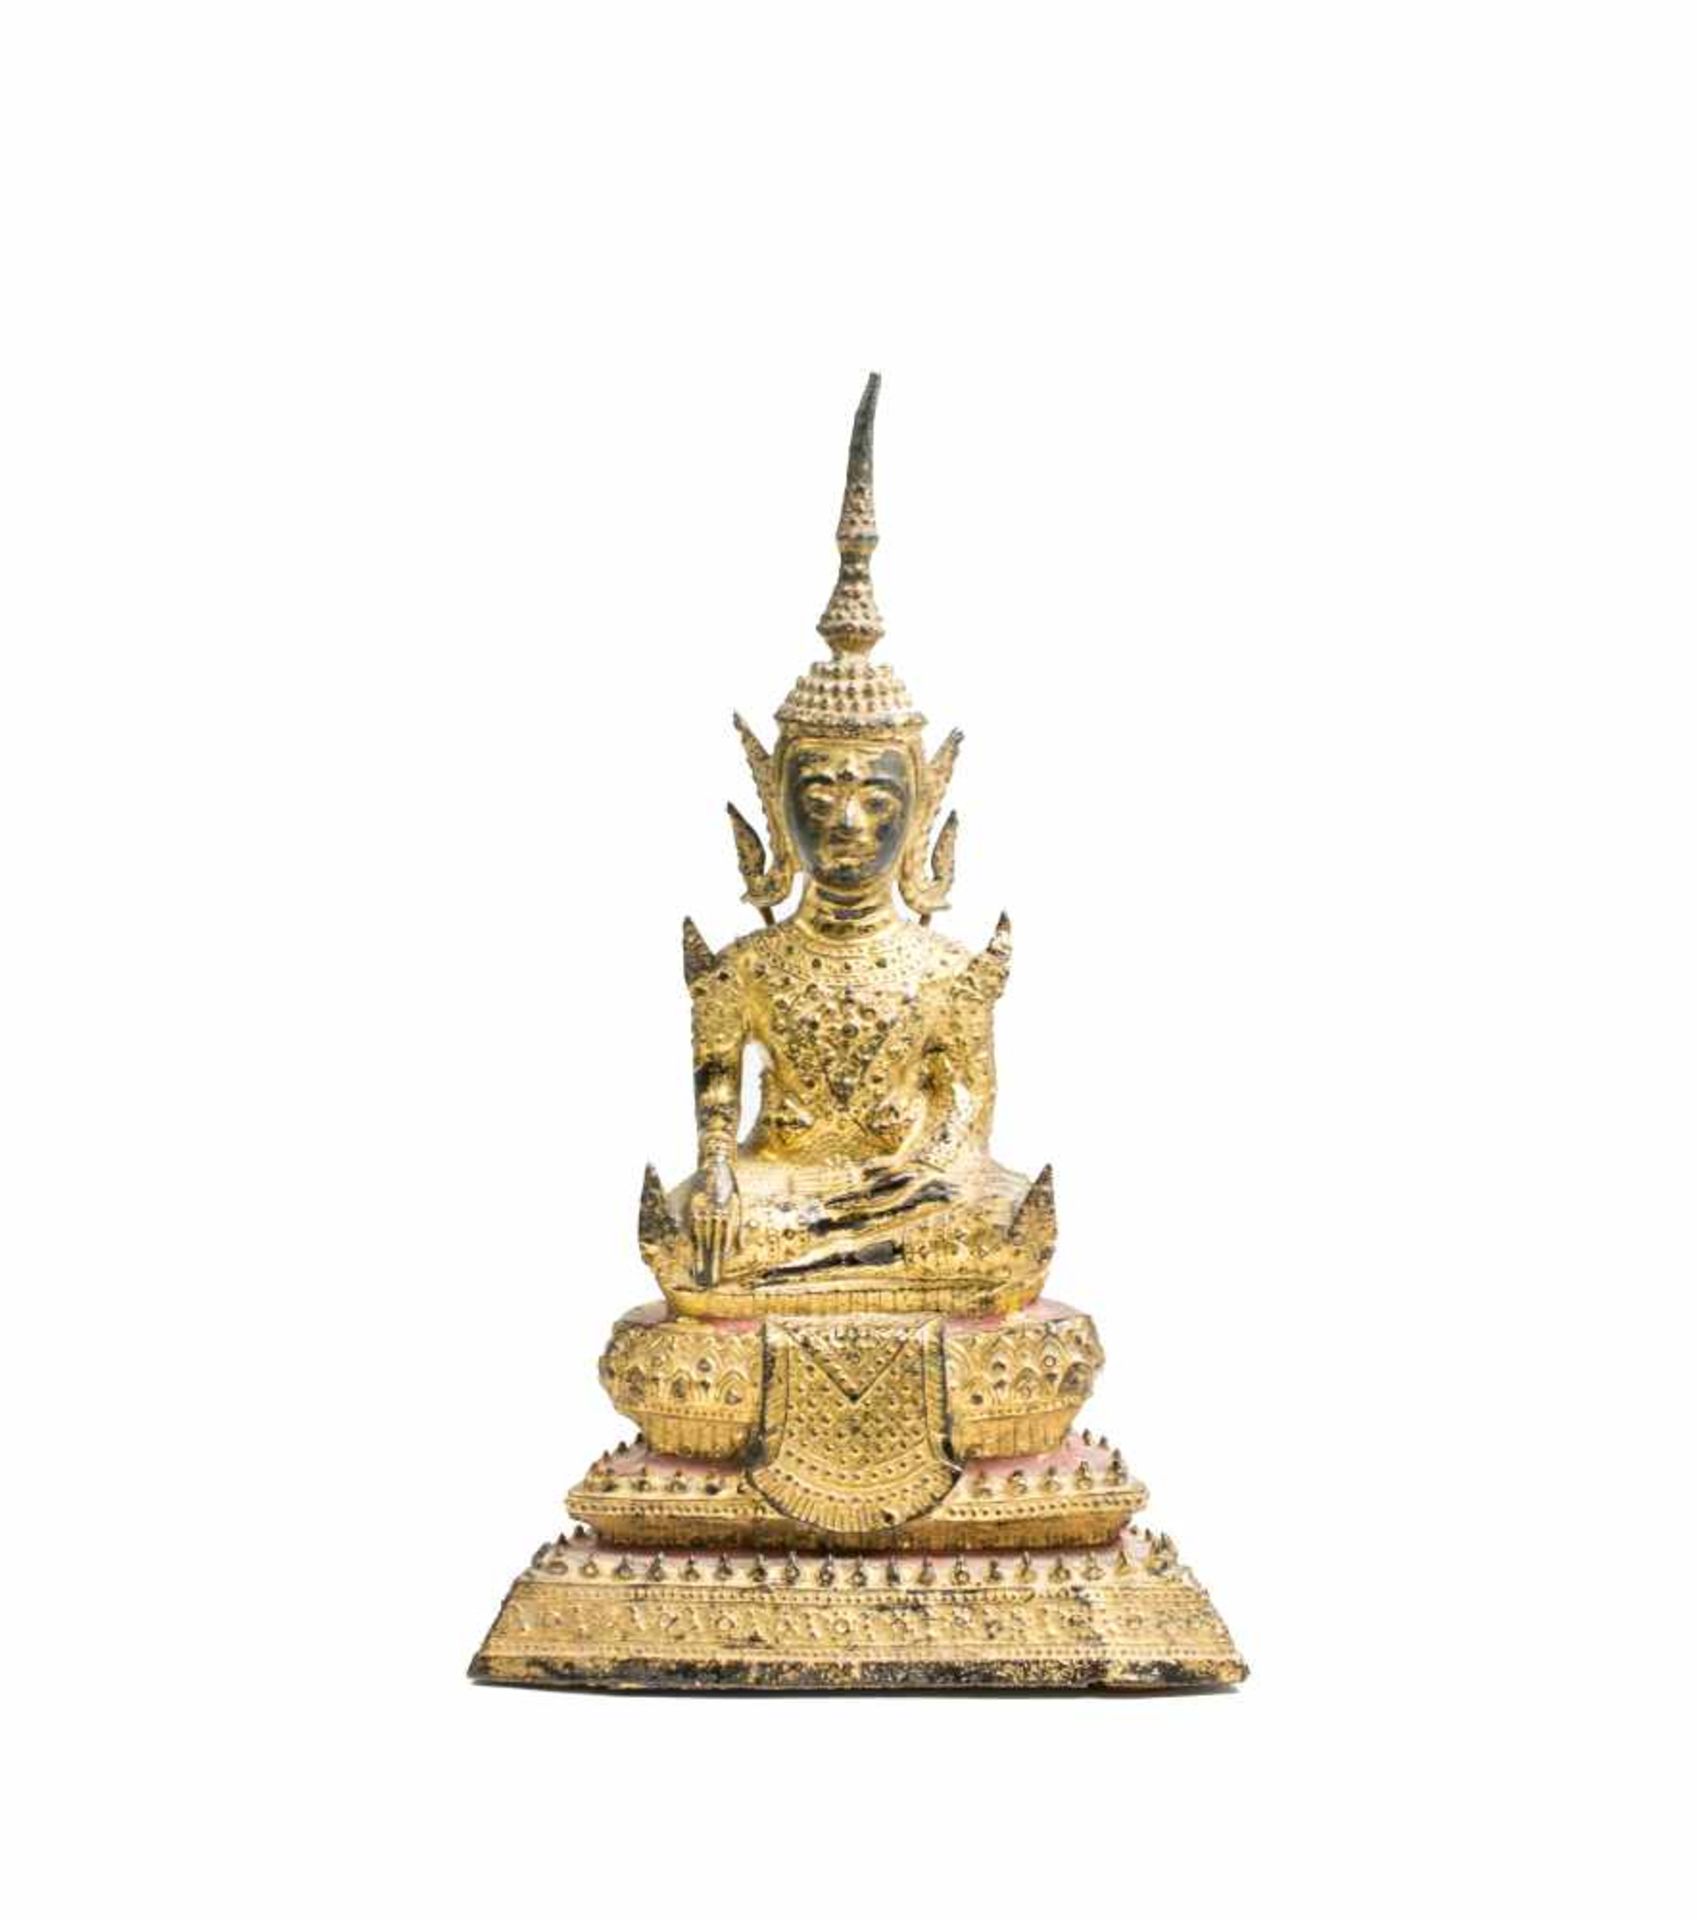 Buddha RattanakosinThailand, 19. Jh., Bronze, vergoldet, gefüllt, Höhe 21,5 cm, Foto von